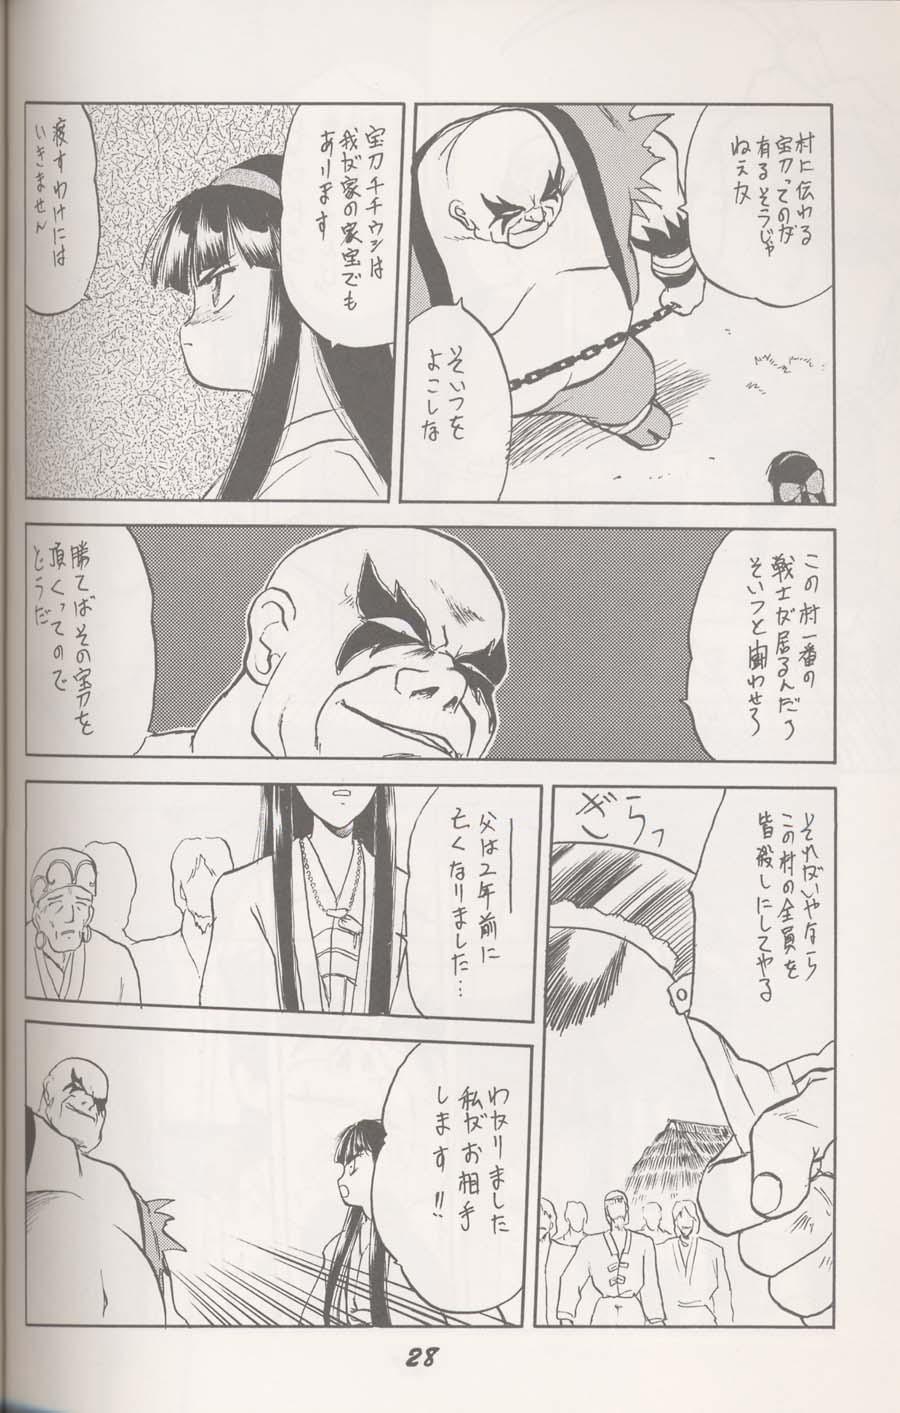 Eating Pussy ヌプル メノコ ナコルル - Samurai spirits Infiel - Page 3